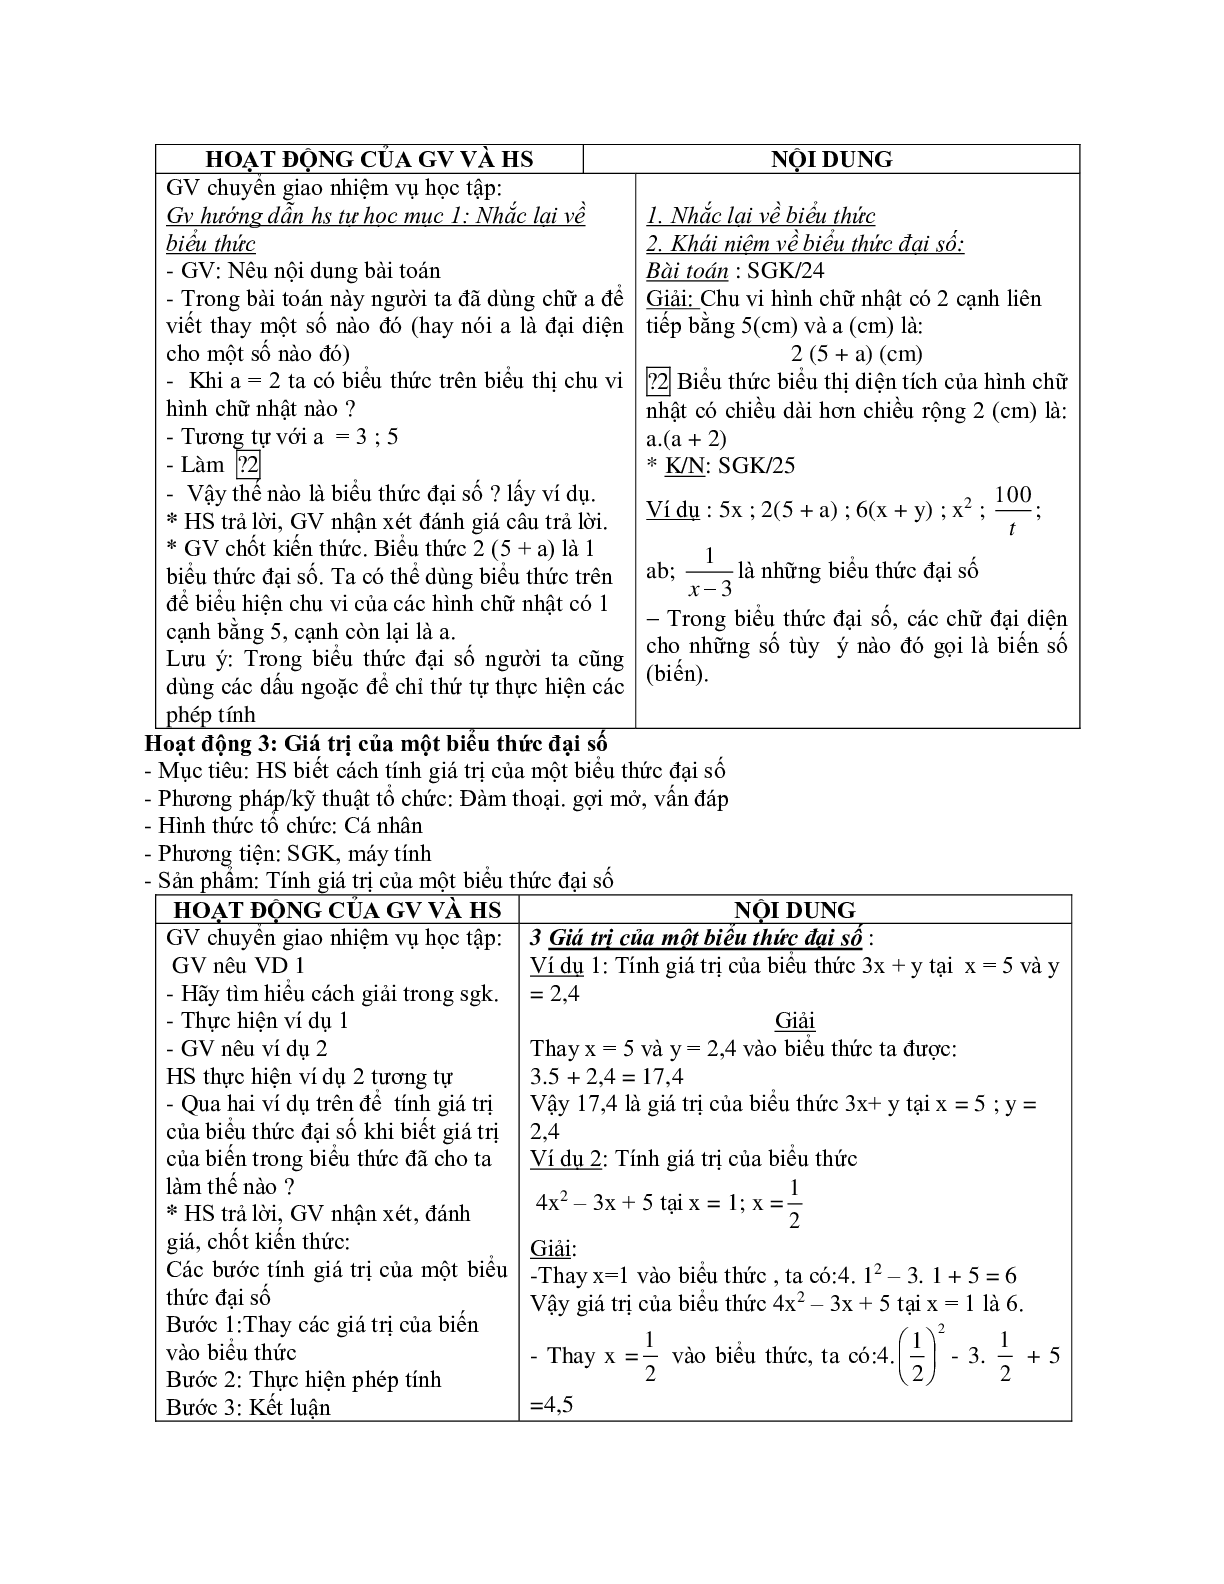 Giáo án Toán học 7 bài 1,2: Khái niệm về biểu thức đại số - Giá trị của một biểu thức đại số mới nhất (trang 2)